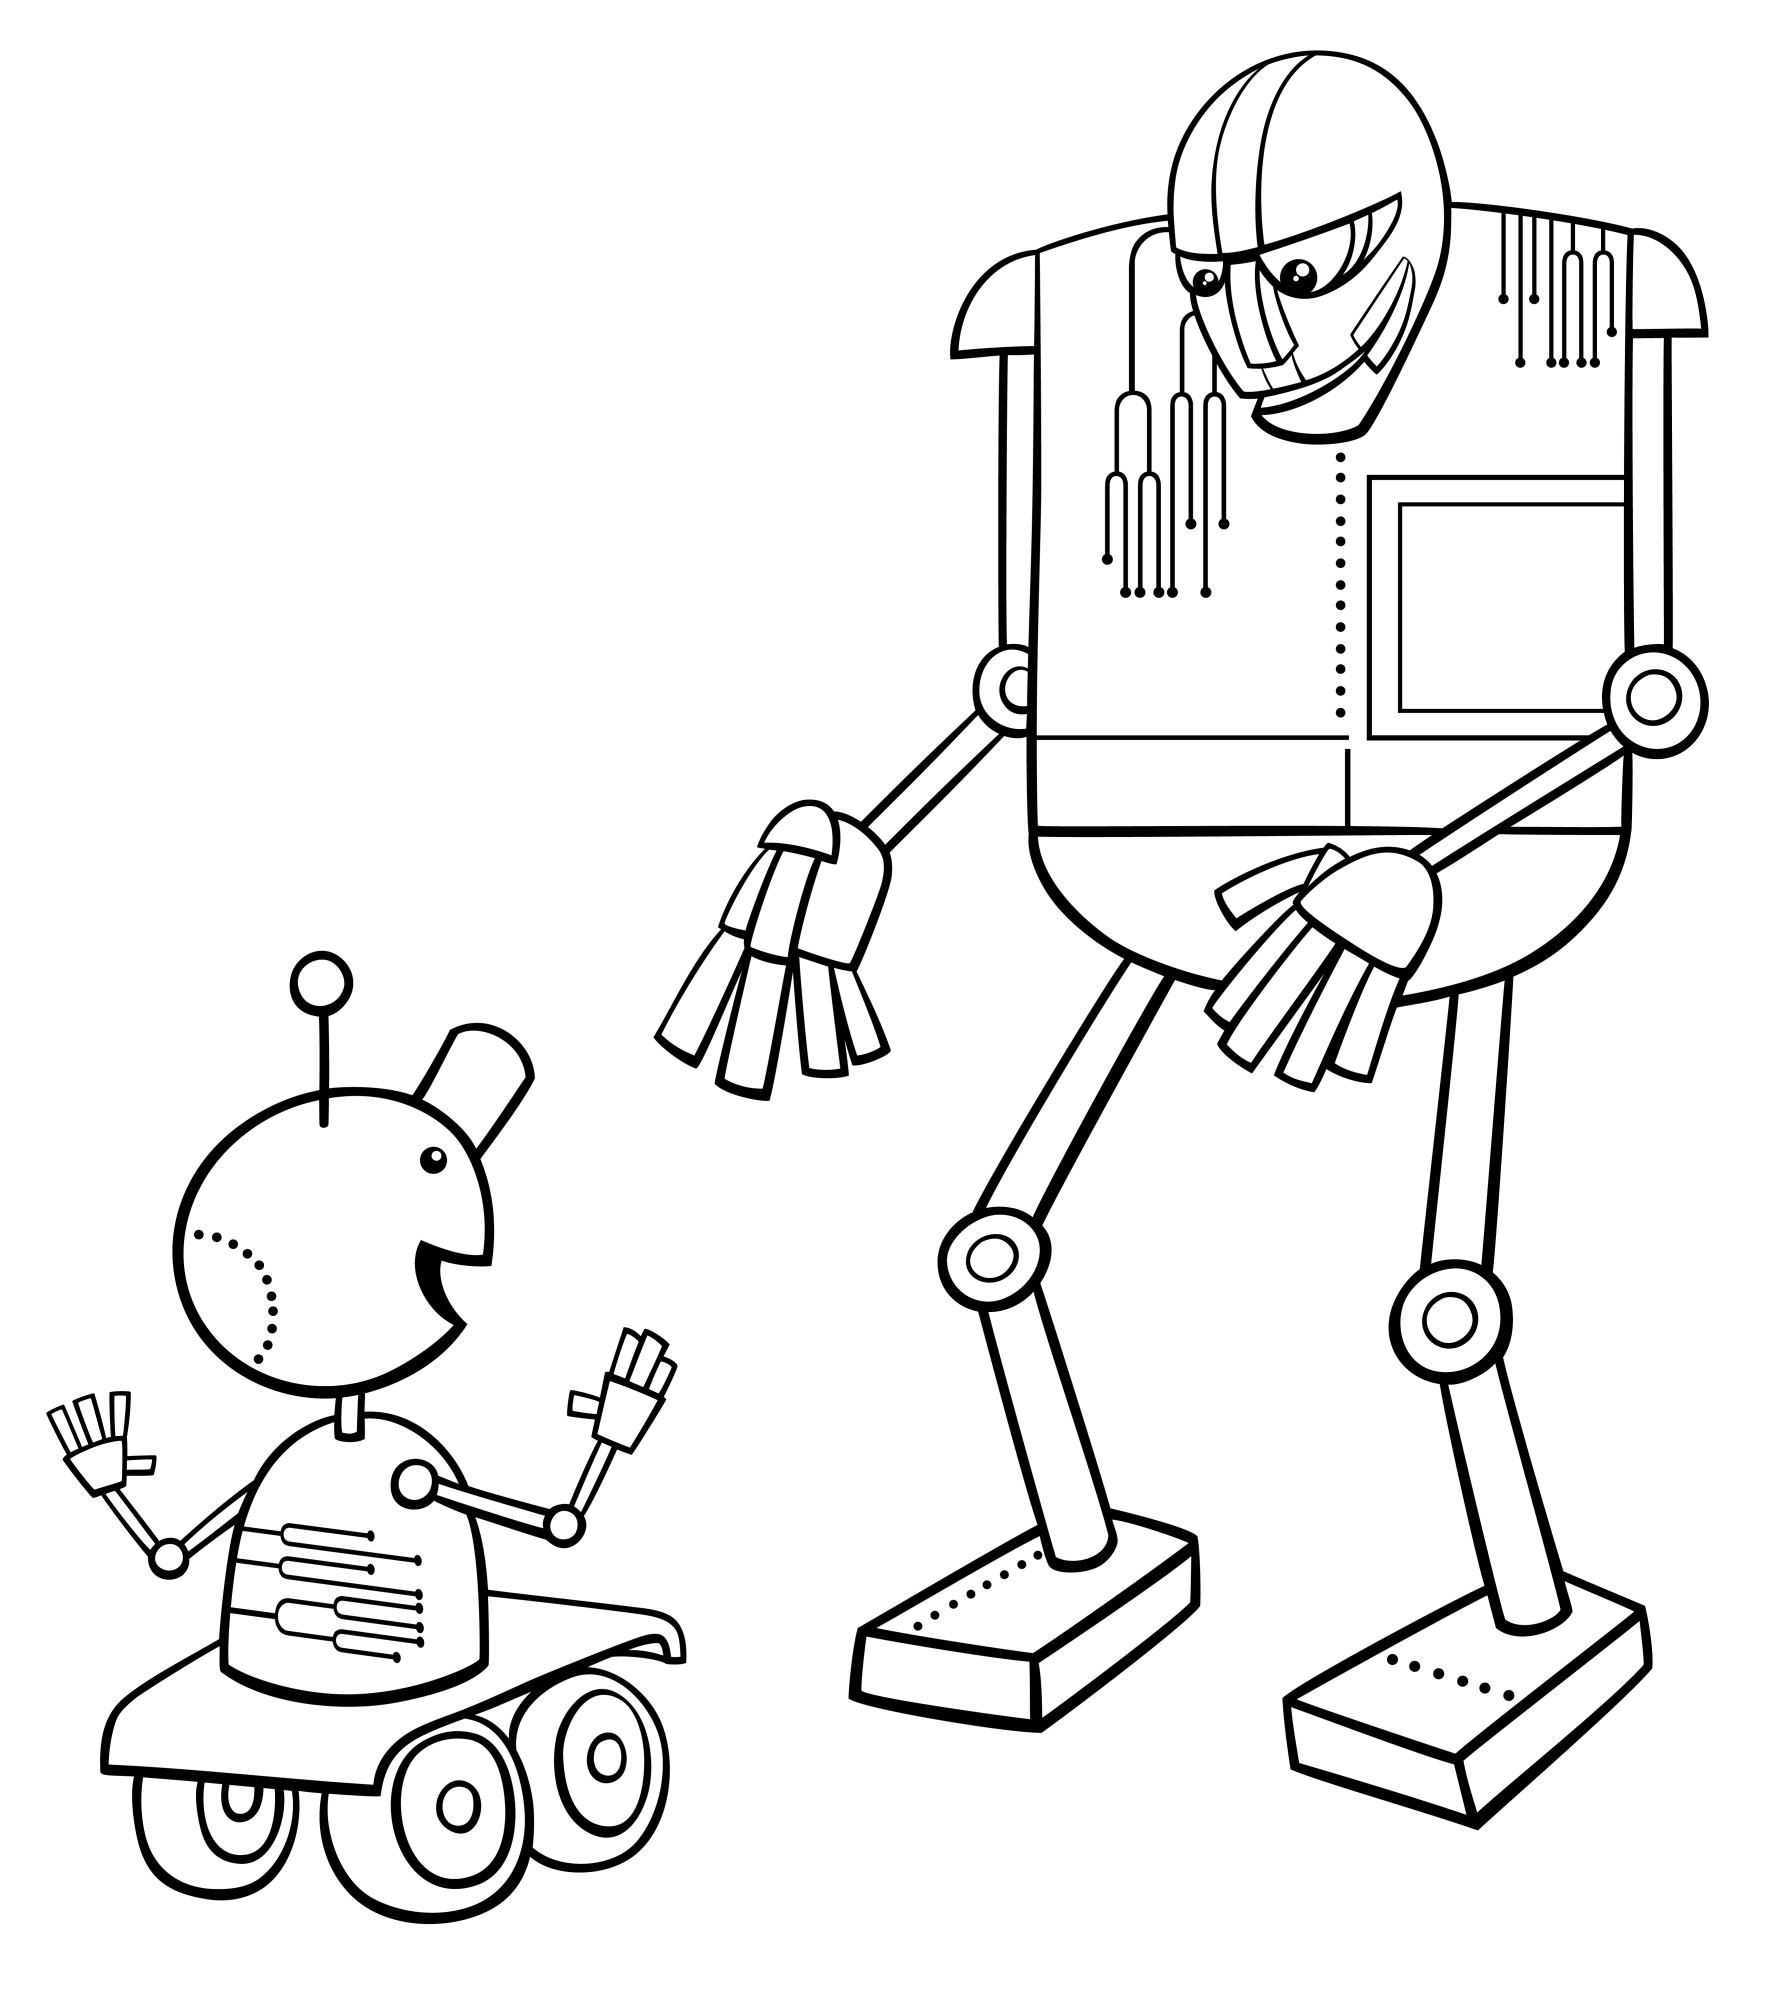 Раскраска для детей: роботы общаются